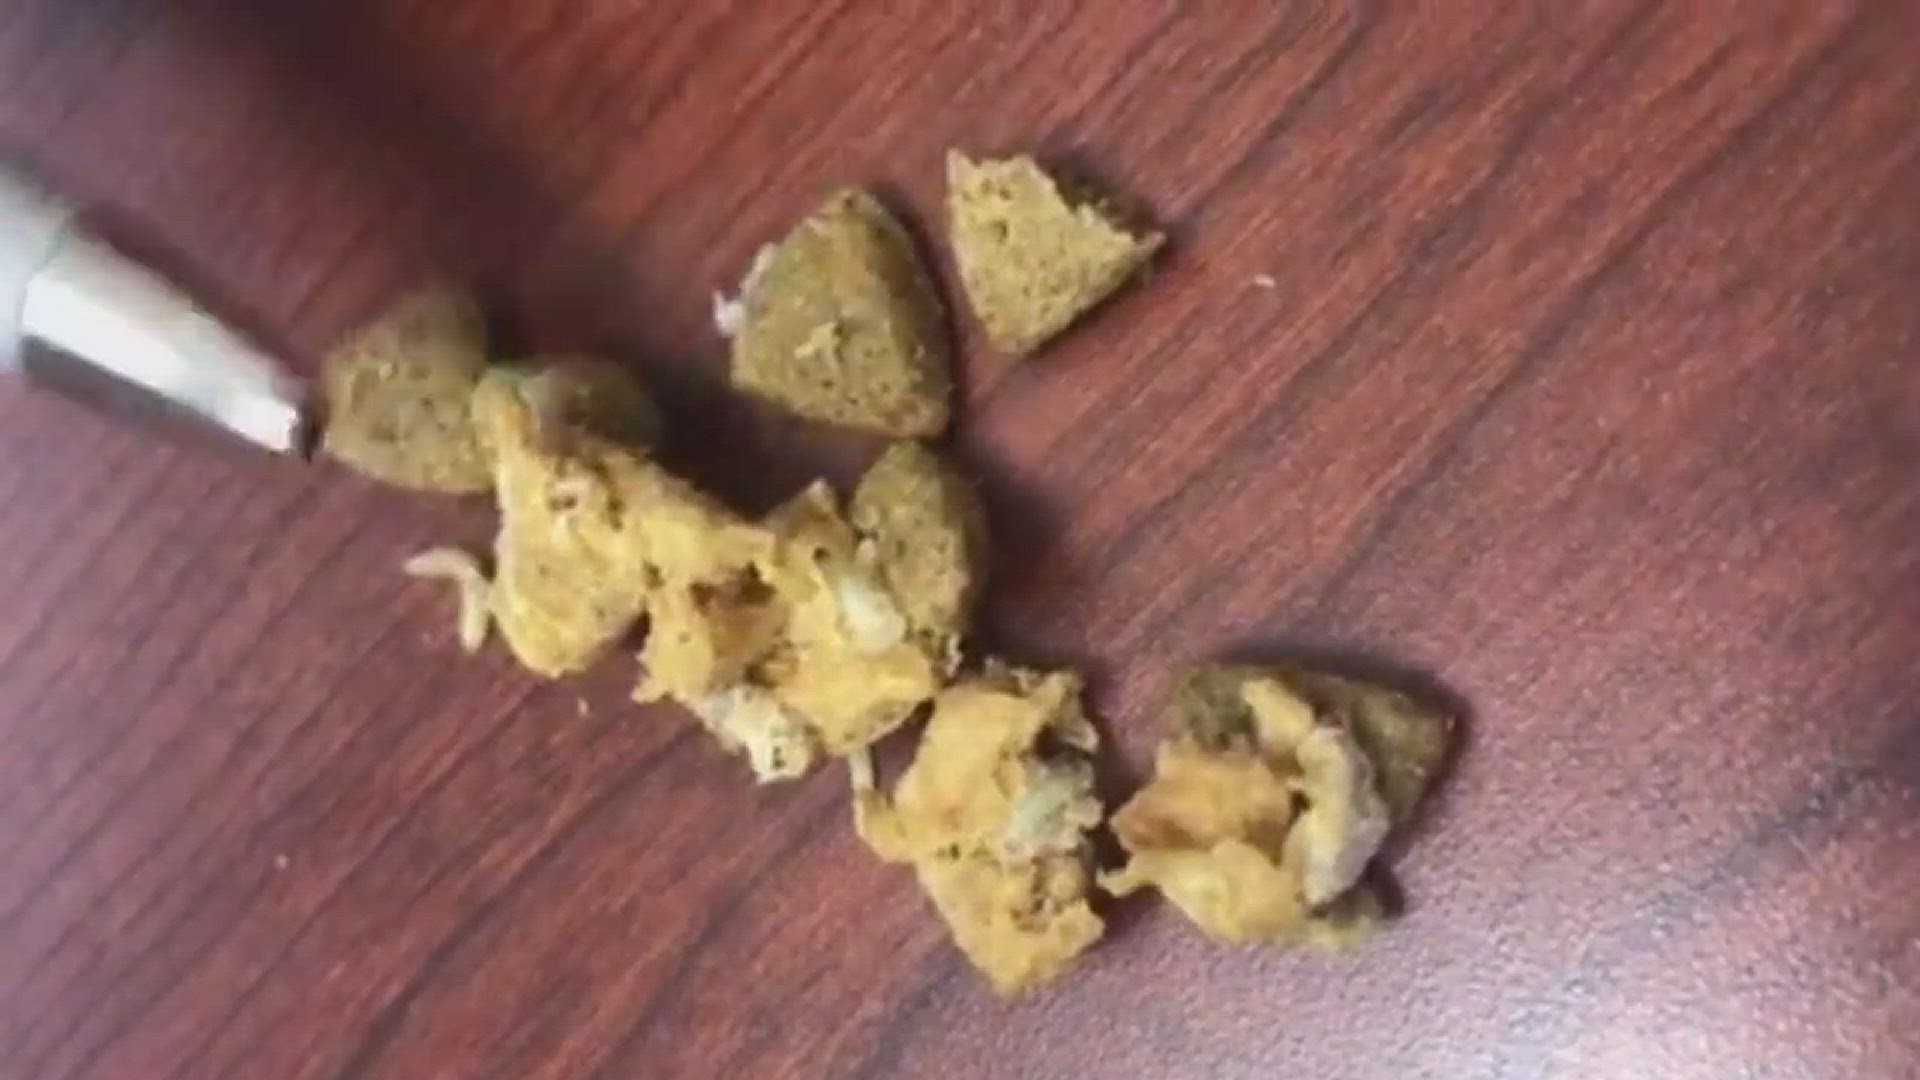 Jacksonville man finds 'maggots' in dog food